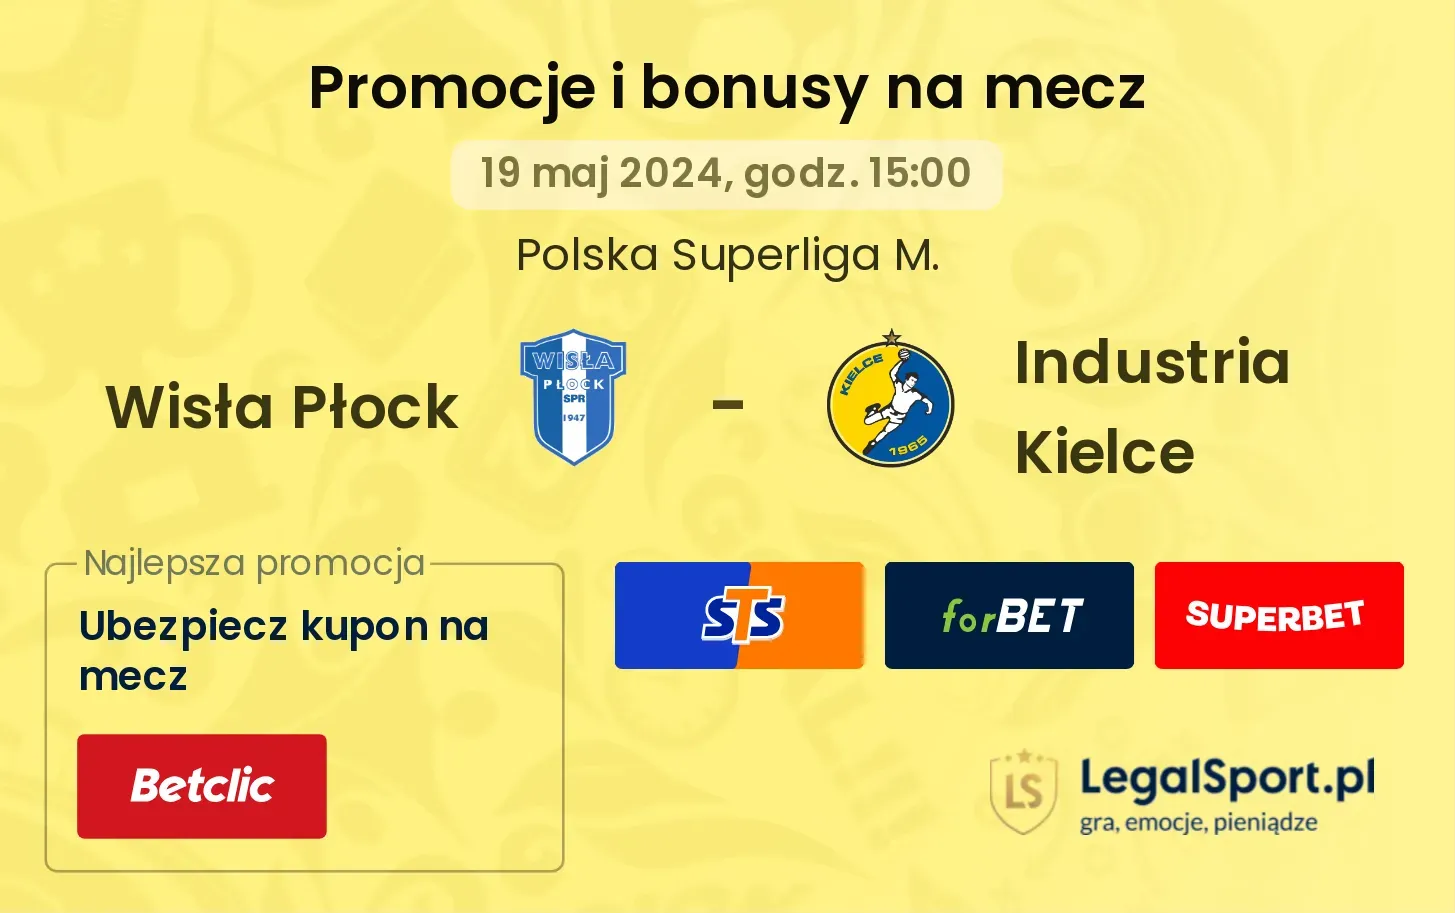 Wisła Płock - Industria Kielce bonusy i promocje (19.05, 15:00)